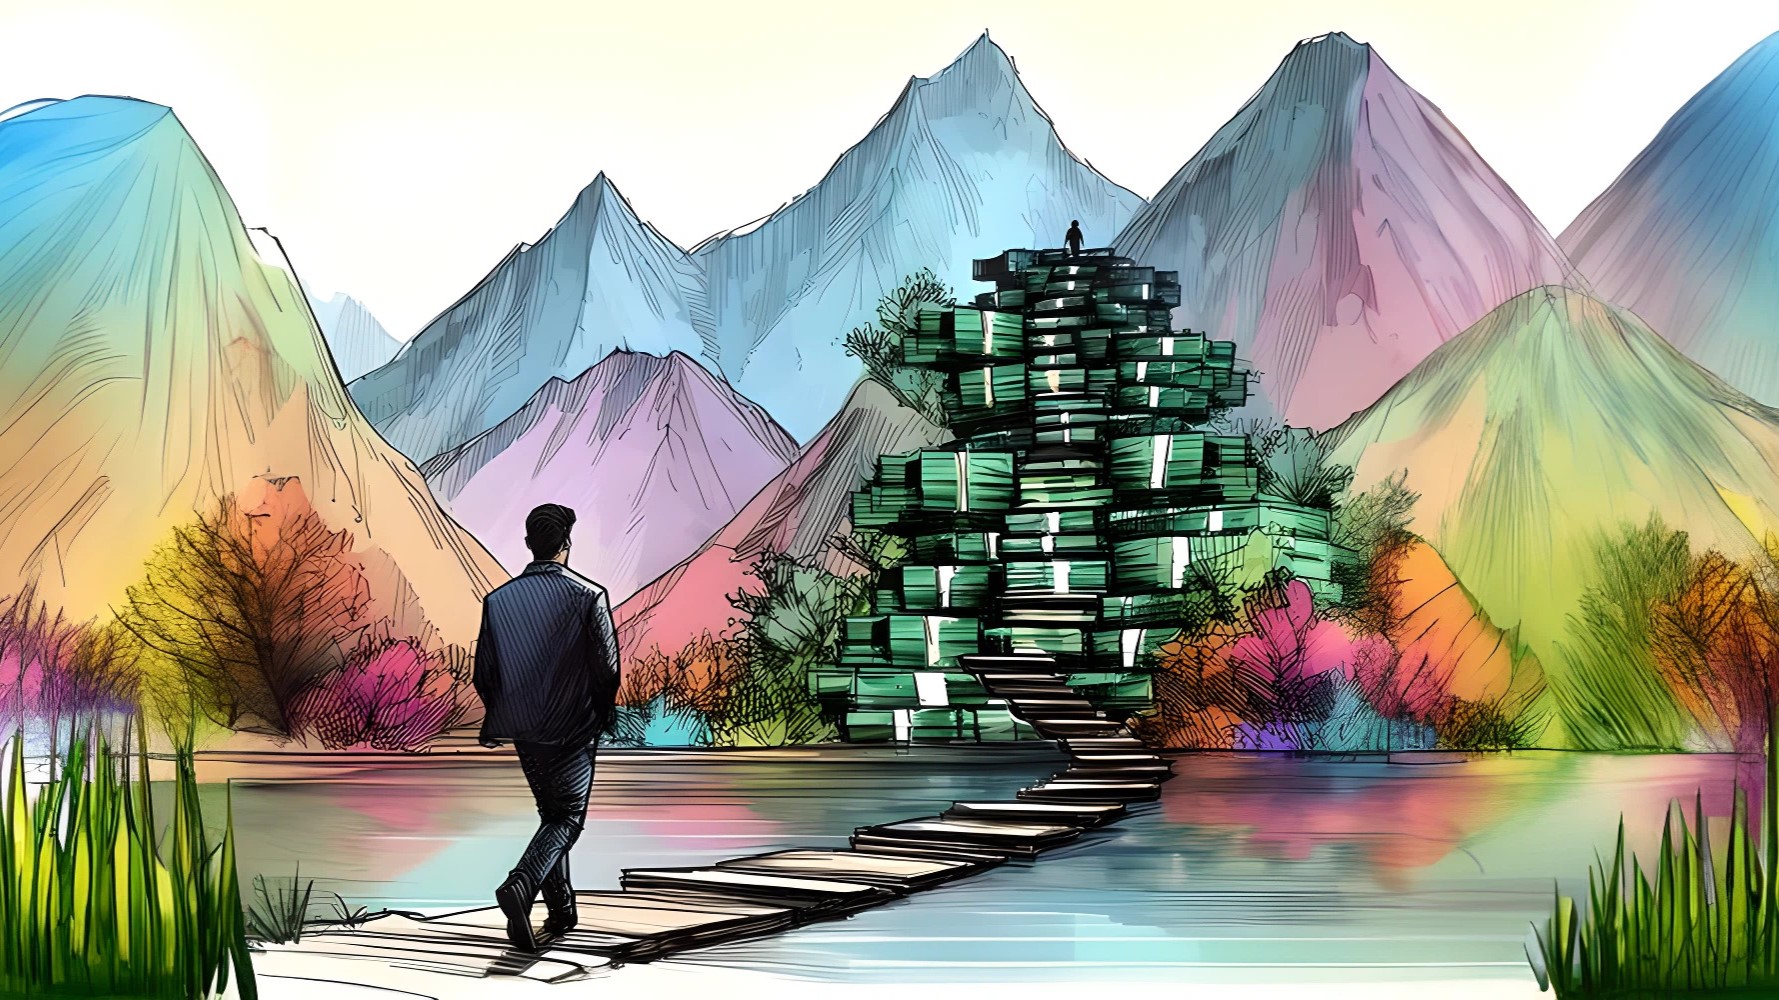 schizzo di inchiostro paesaggistico di un uomo che sale una scala fatta di soldi, arte digitale, colorata